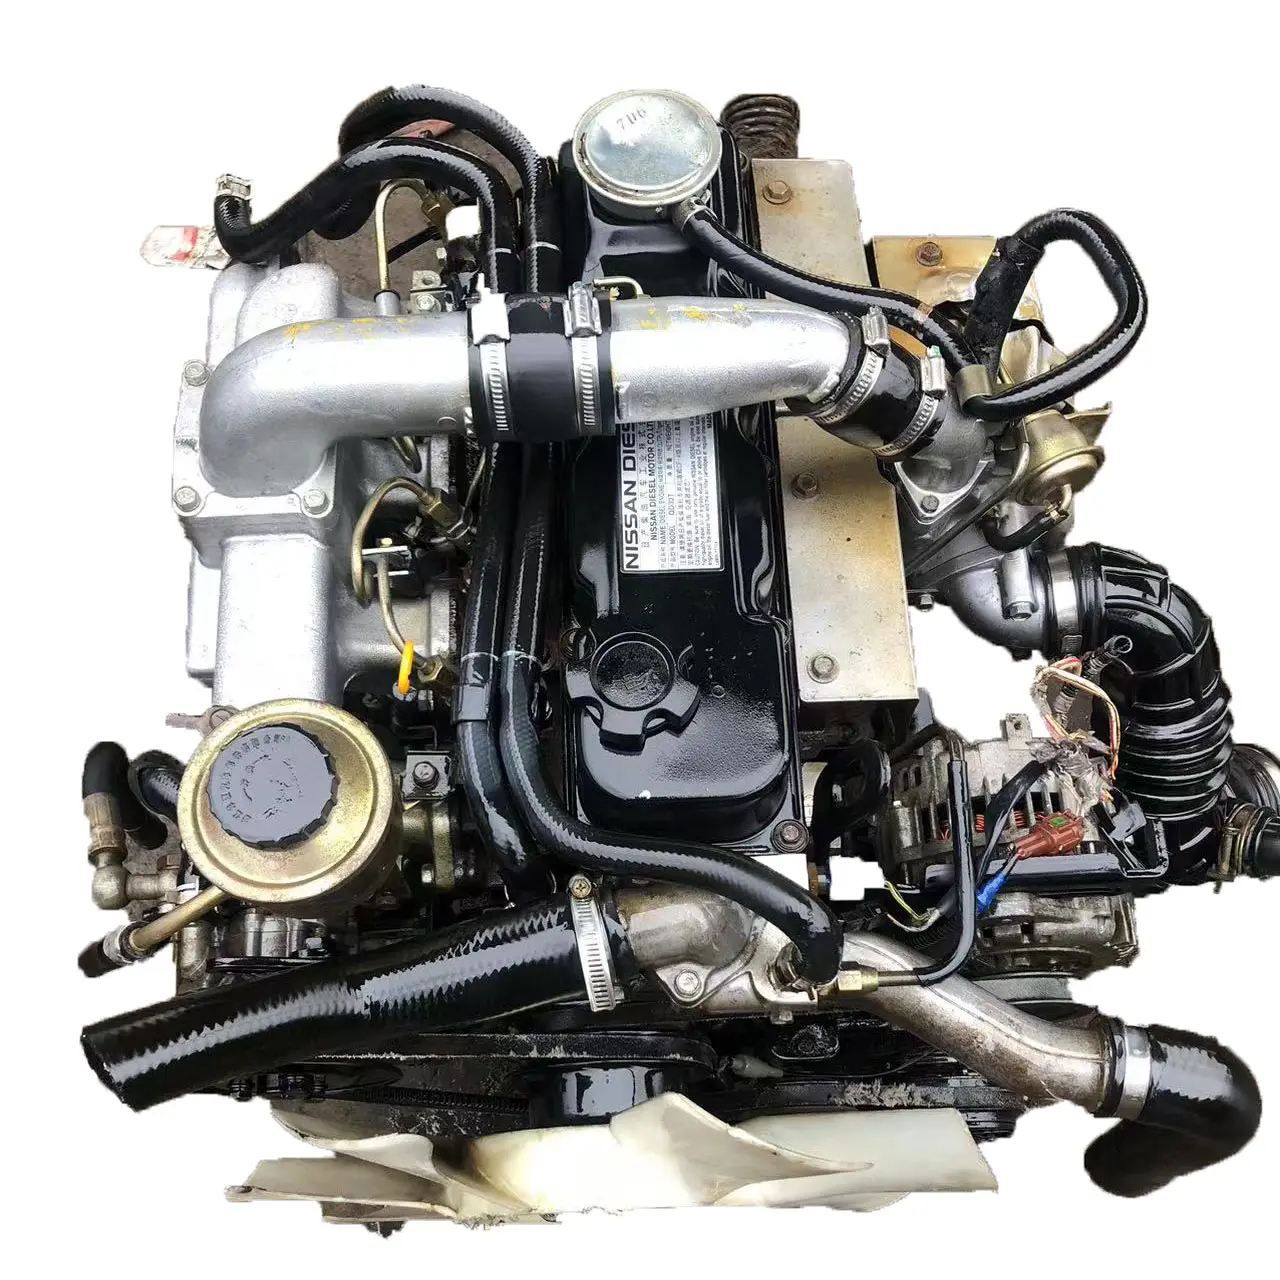 100% getestet Original Komplett Gebraucht Gebraucht Nissan Qd32 Motor für die Reparatur von Baumaschinen